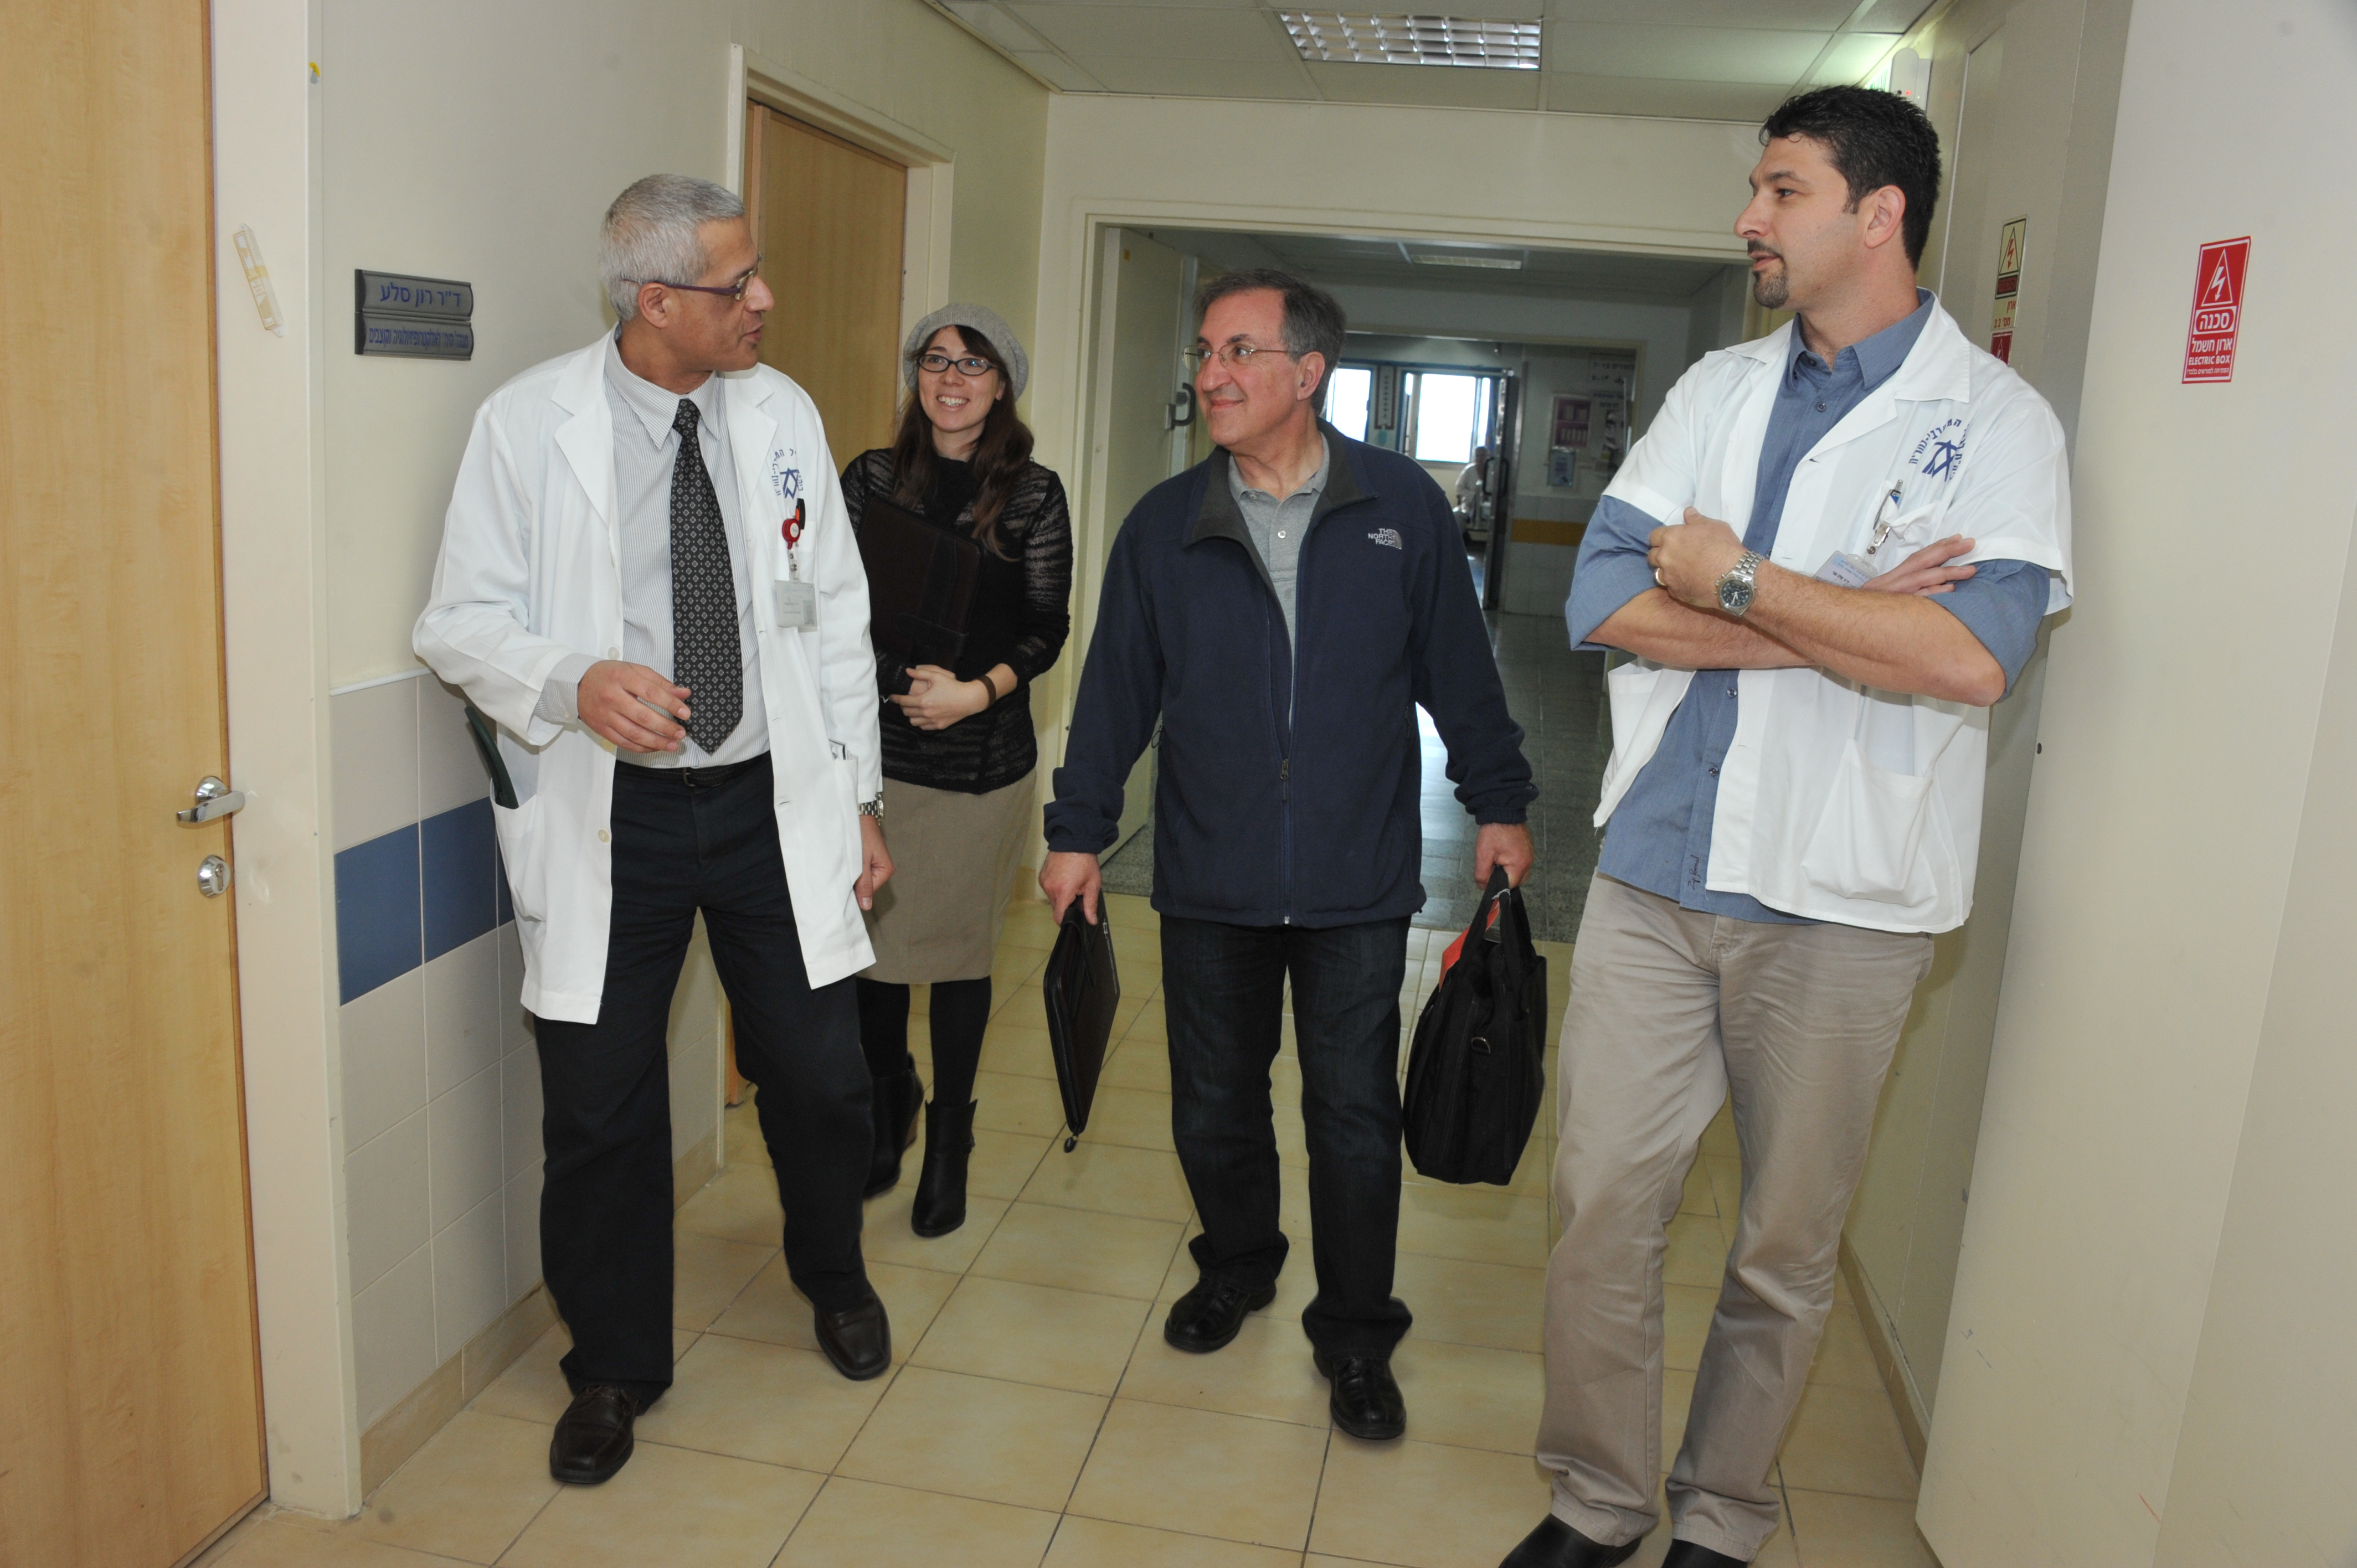 Friends matter to Western Galilee Hospital